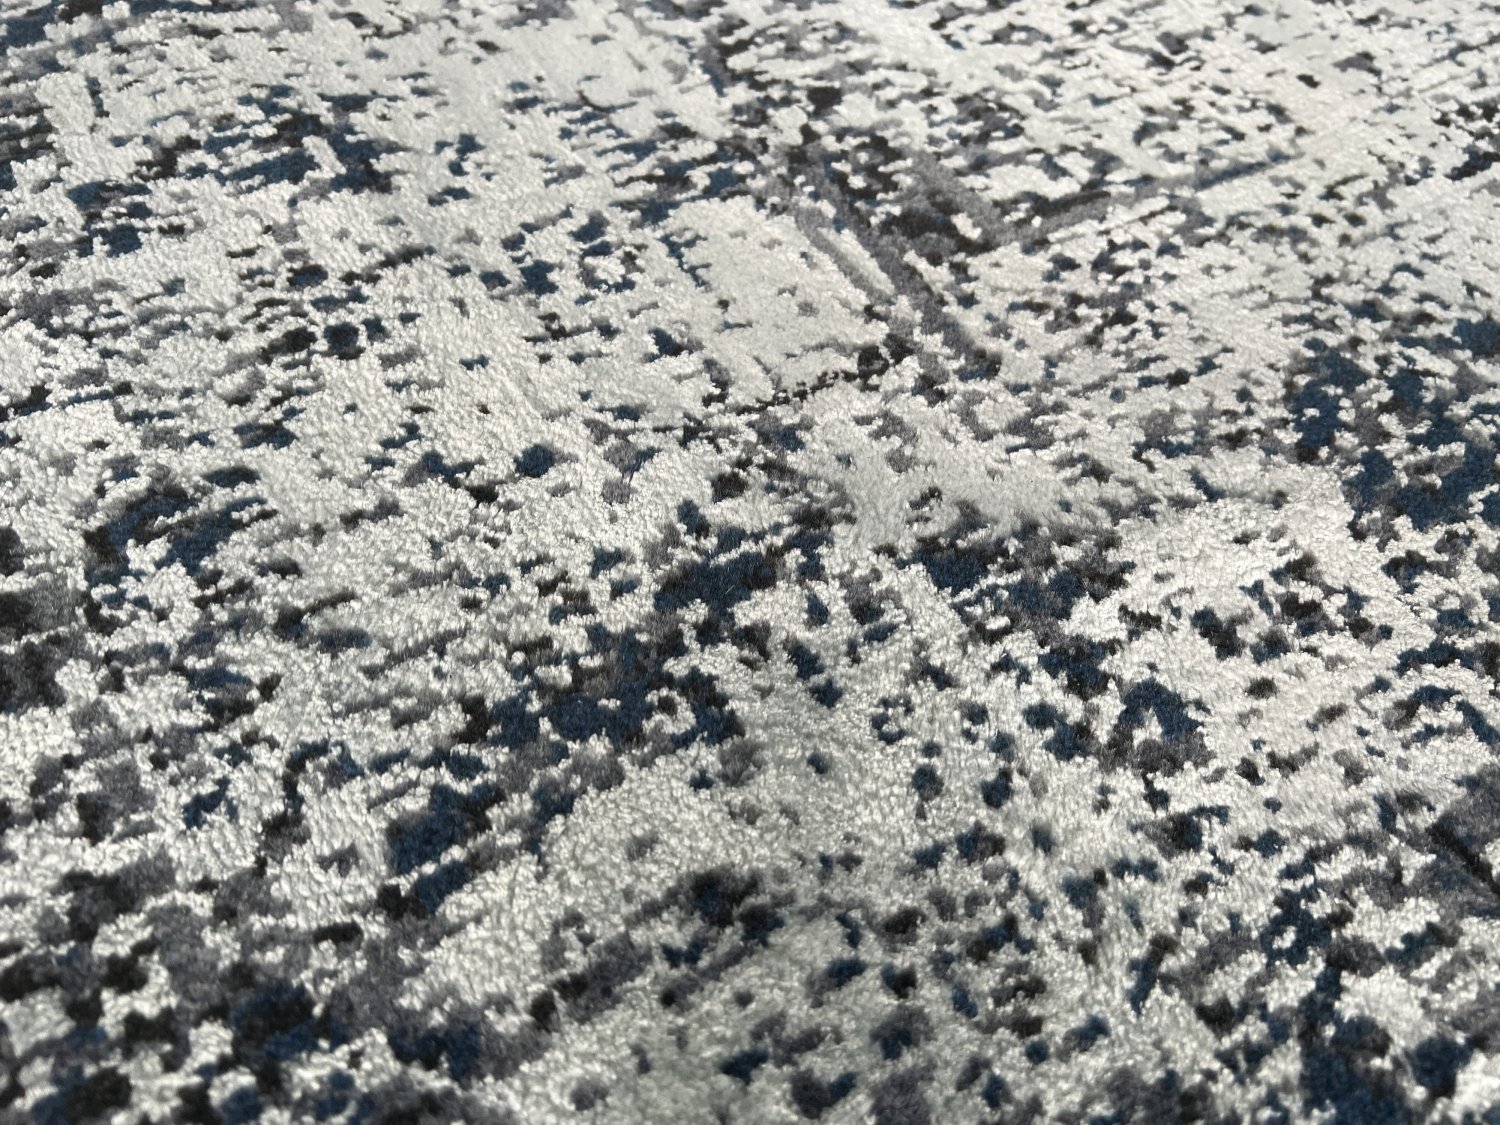 فرش پشمی ماشینی طبیعی و ارگانیک کد 0103 - زمینه آبی کم رنگ - حاشیه طوسی کم رنگ